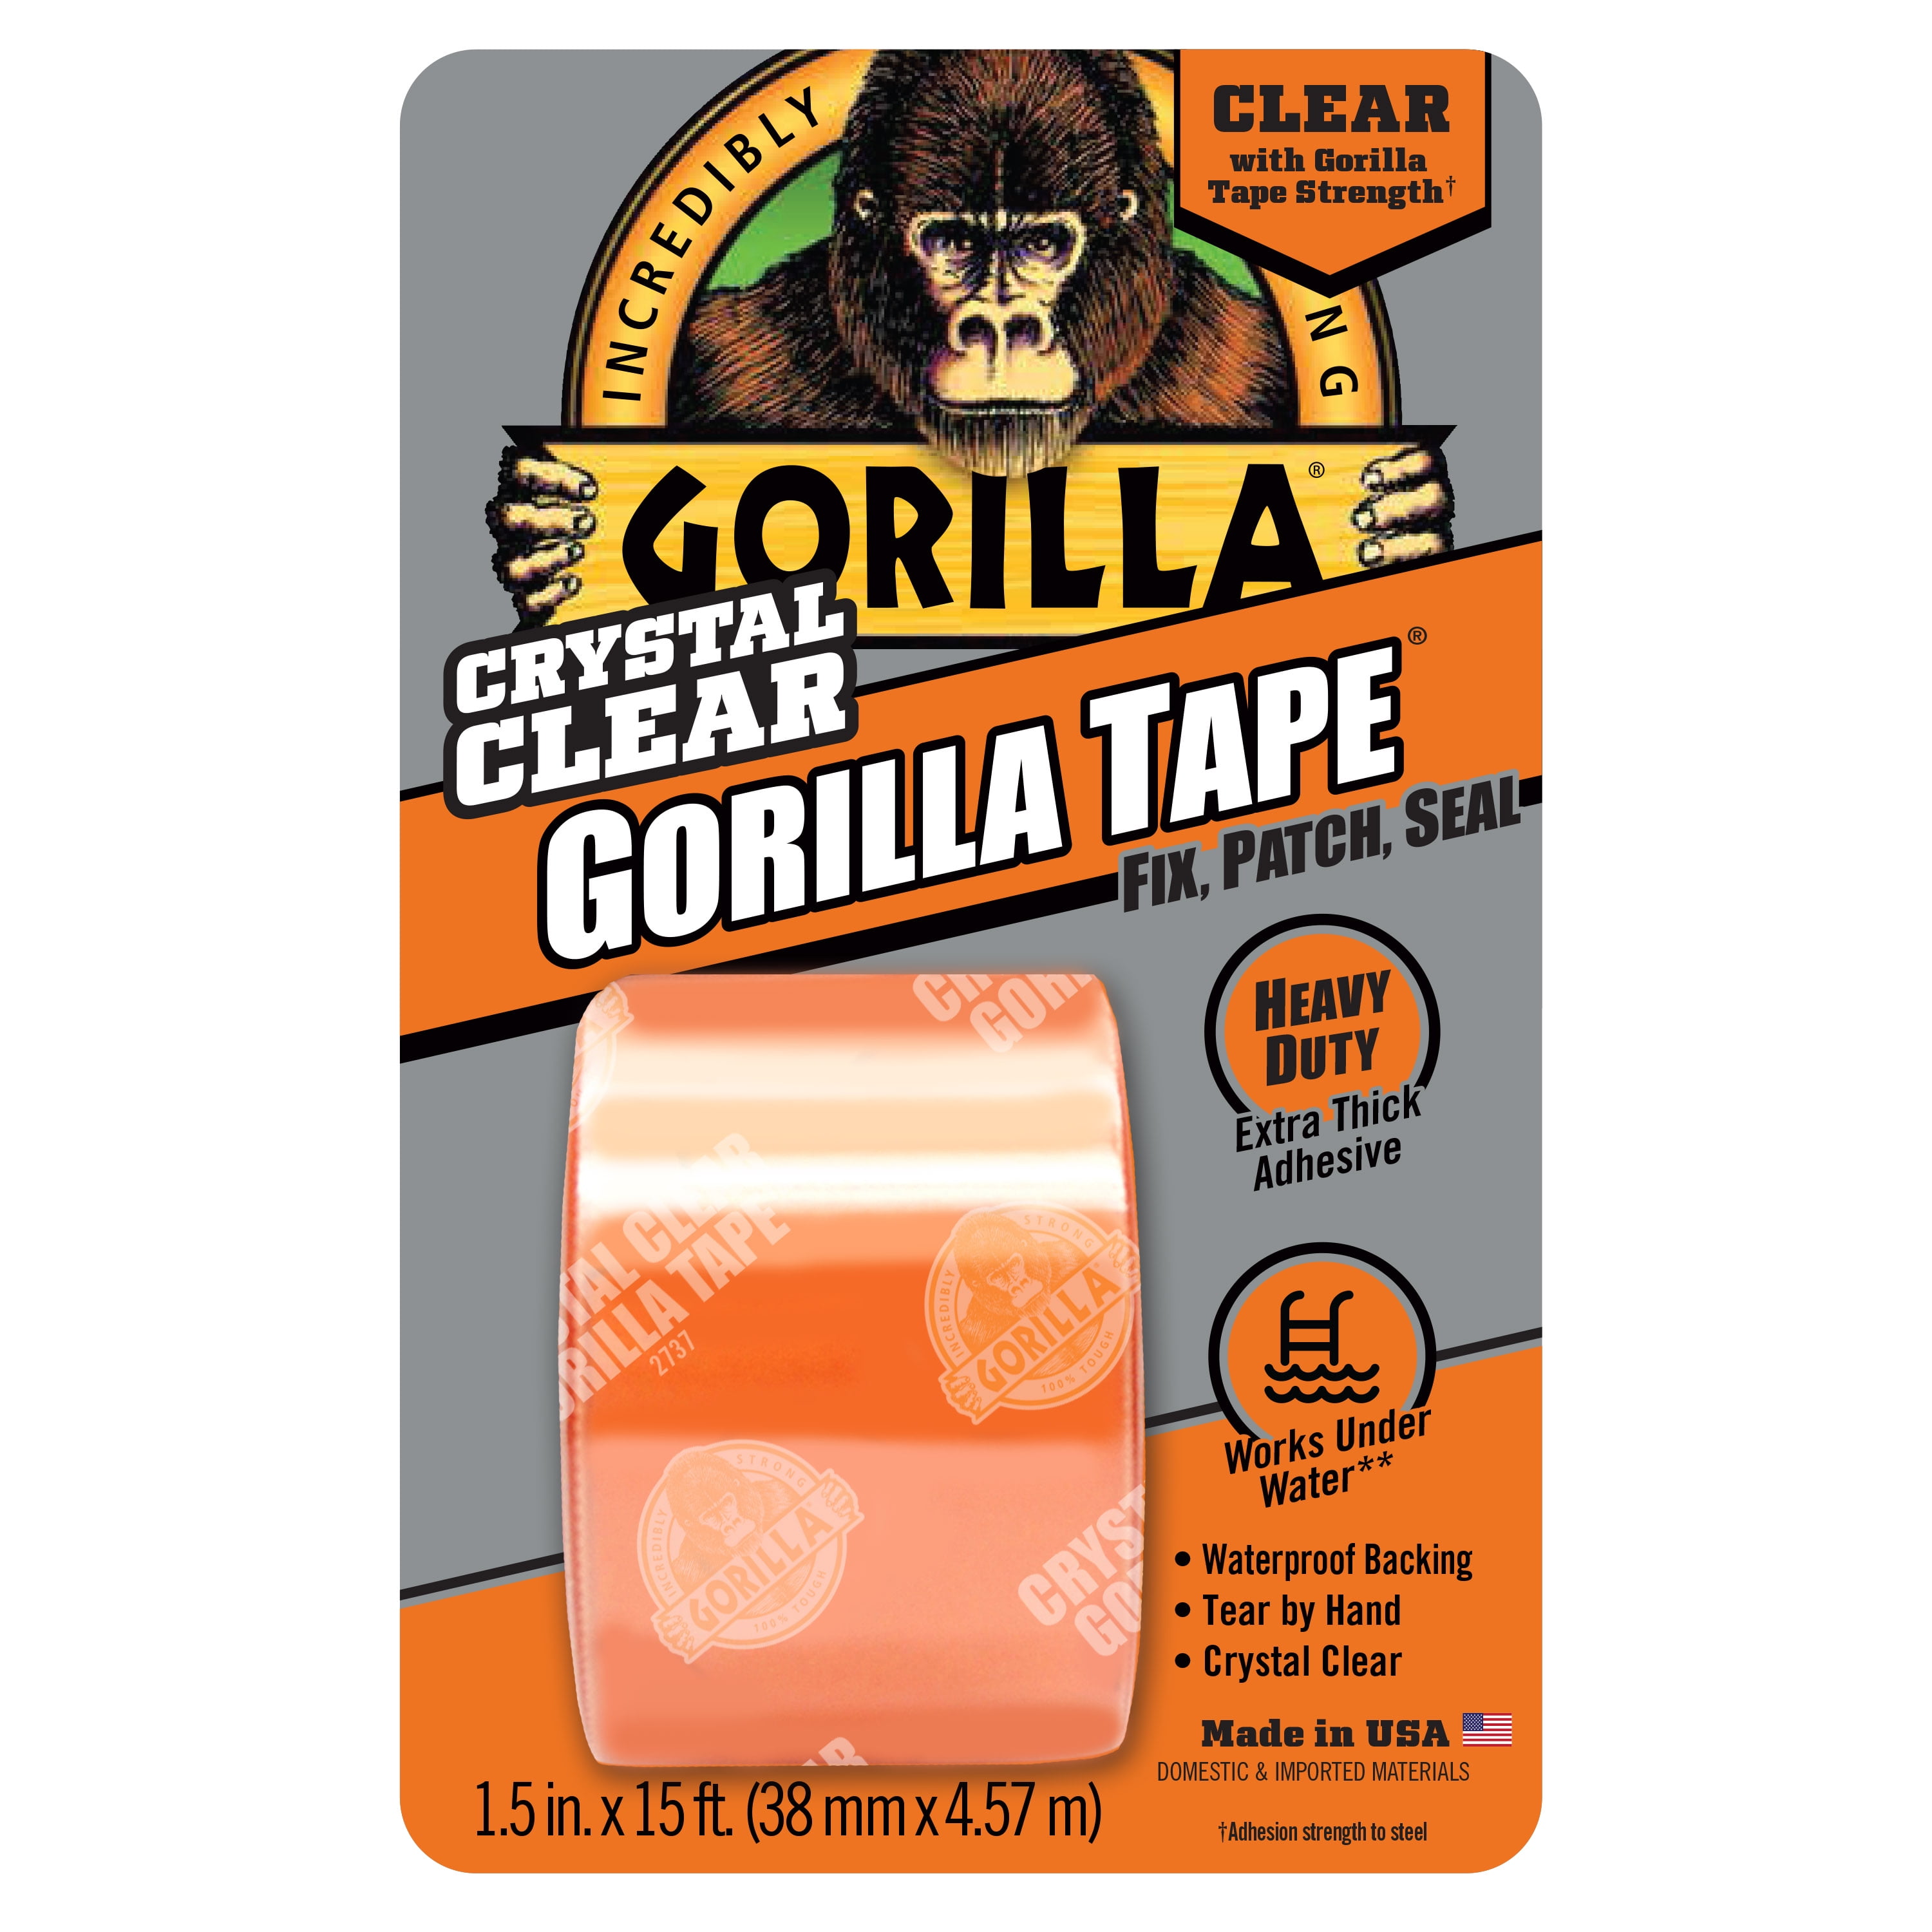 Gorilla Glue - White Gorilla Tape, 30 yd. - 6025001 – Affinity Supply